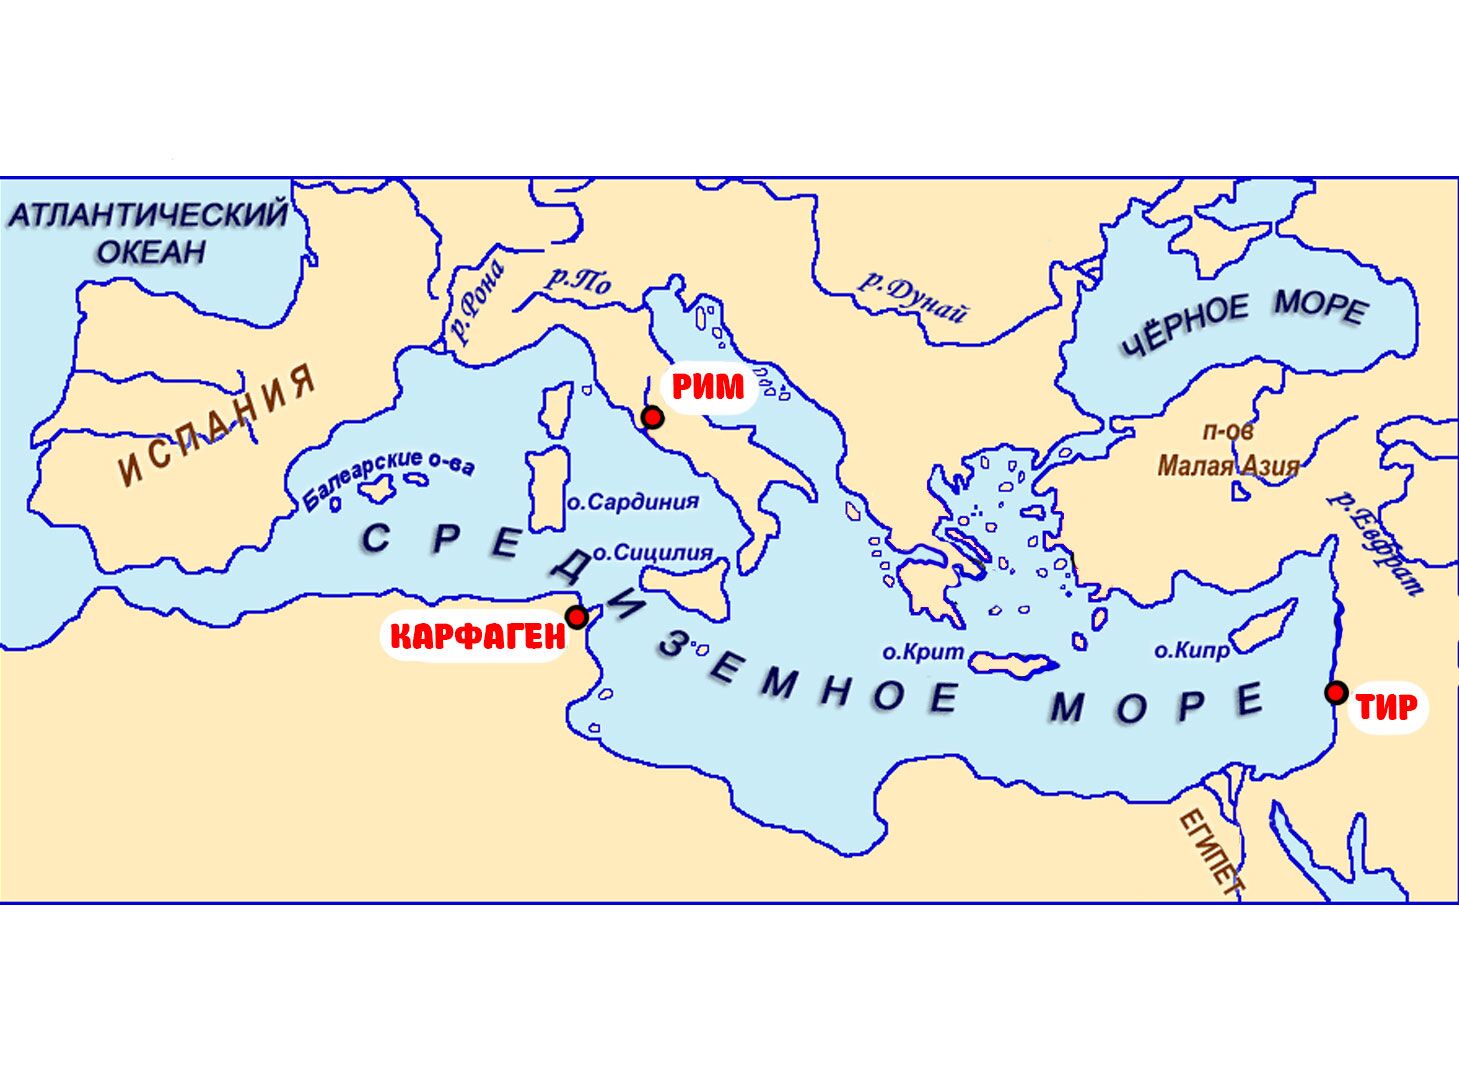 Древнейший рим располагался на территории. Древний Рим и древняя гоециян а карте. Античная цивилизация древний Рим карта. Древняя Греция и древний Рим на карте. Расположение древнего Рима на карте.